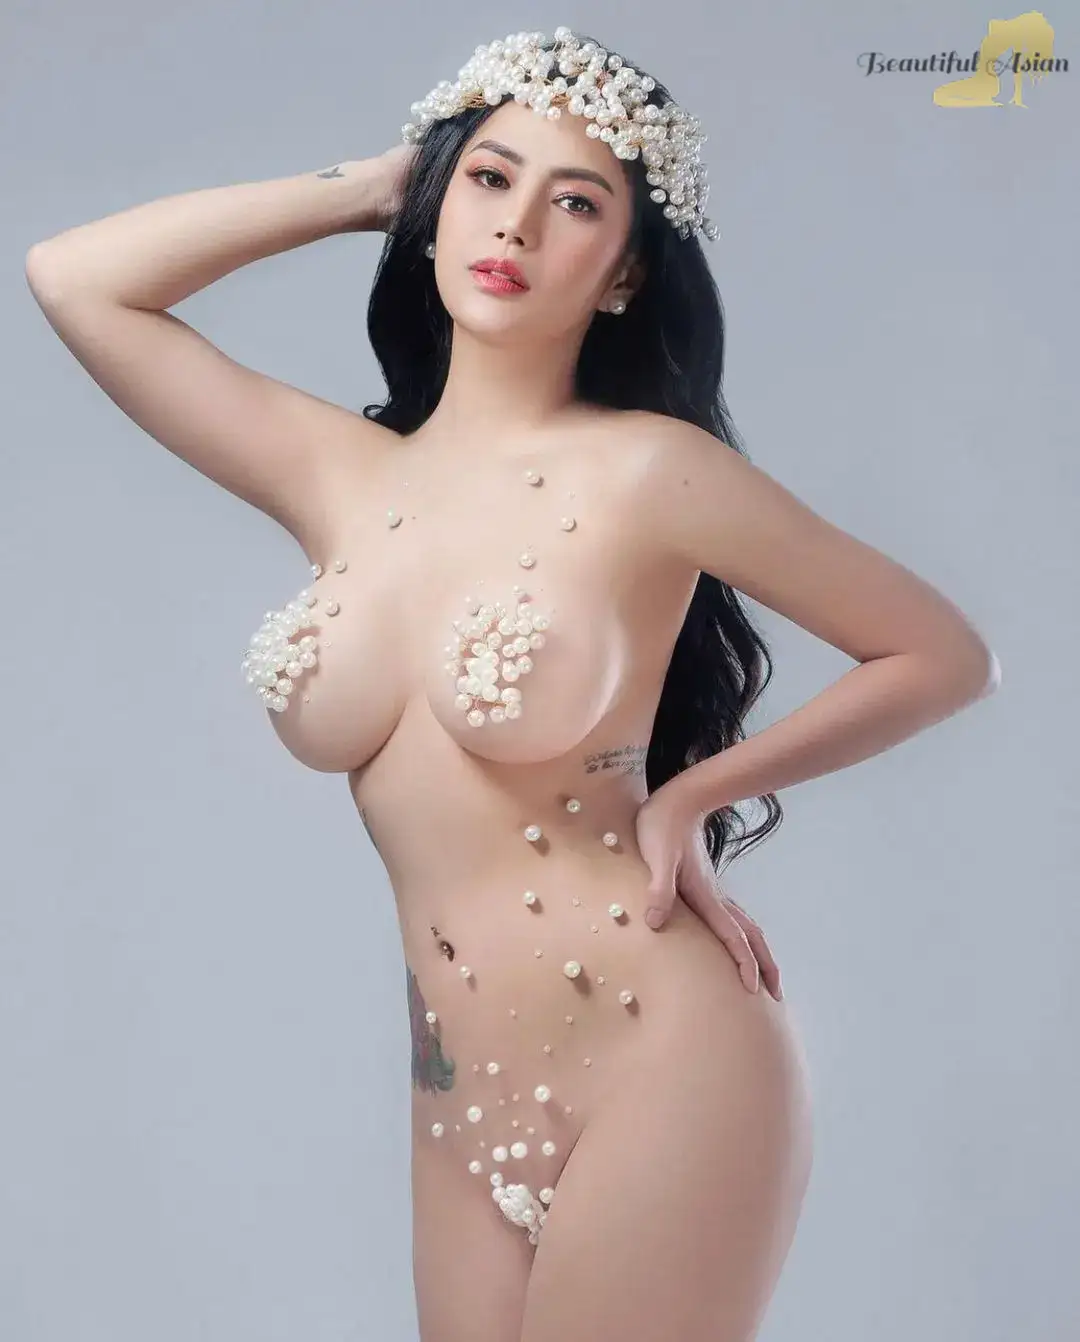 lovely Indonesian model image